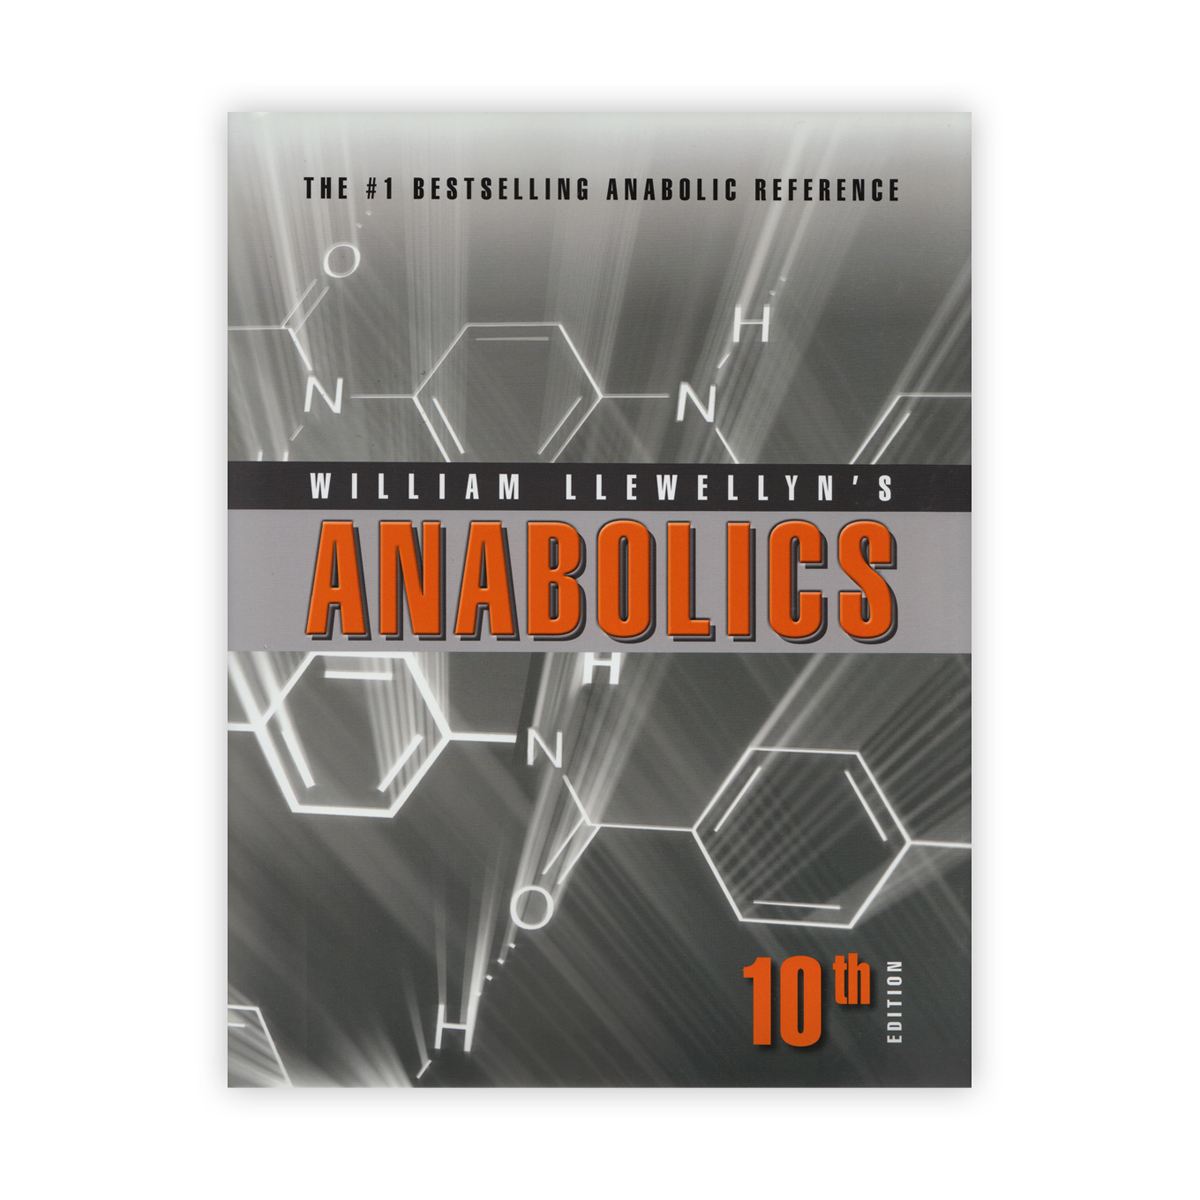 Anabolics 10th Edition by William Llewellyn